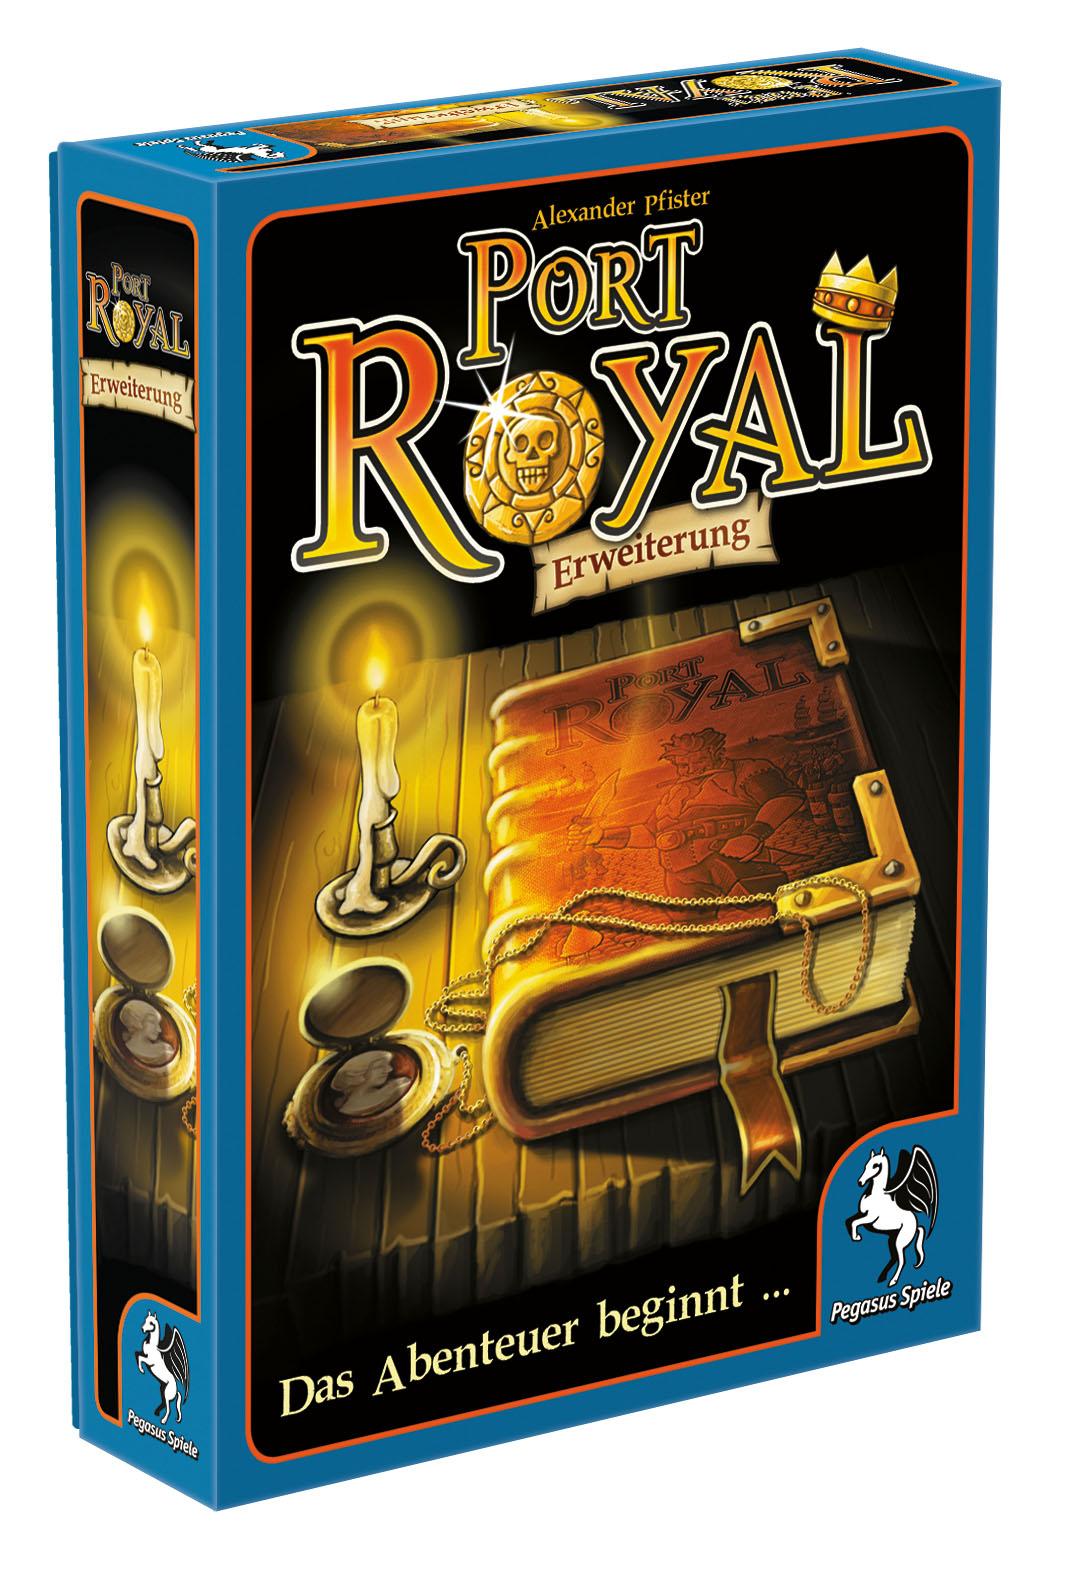 Port Royal - Erweiterung: Das Abenteuer beginnt ...